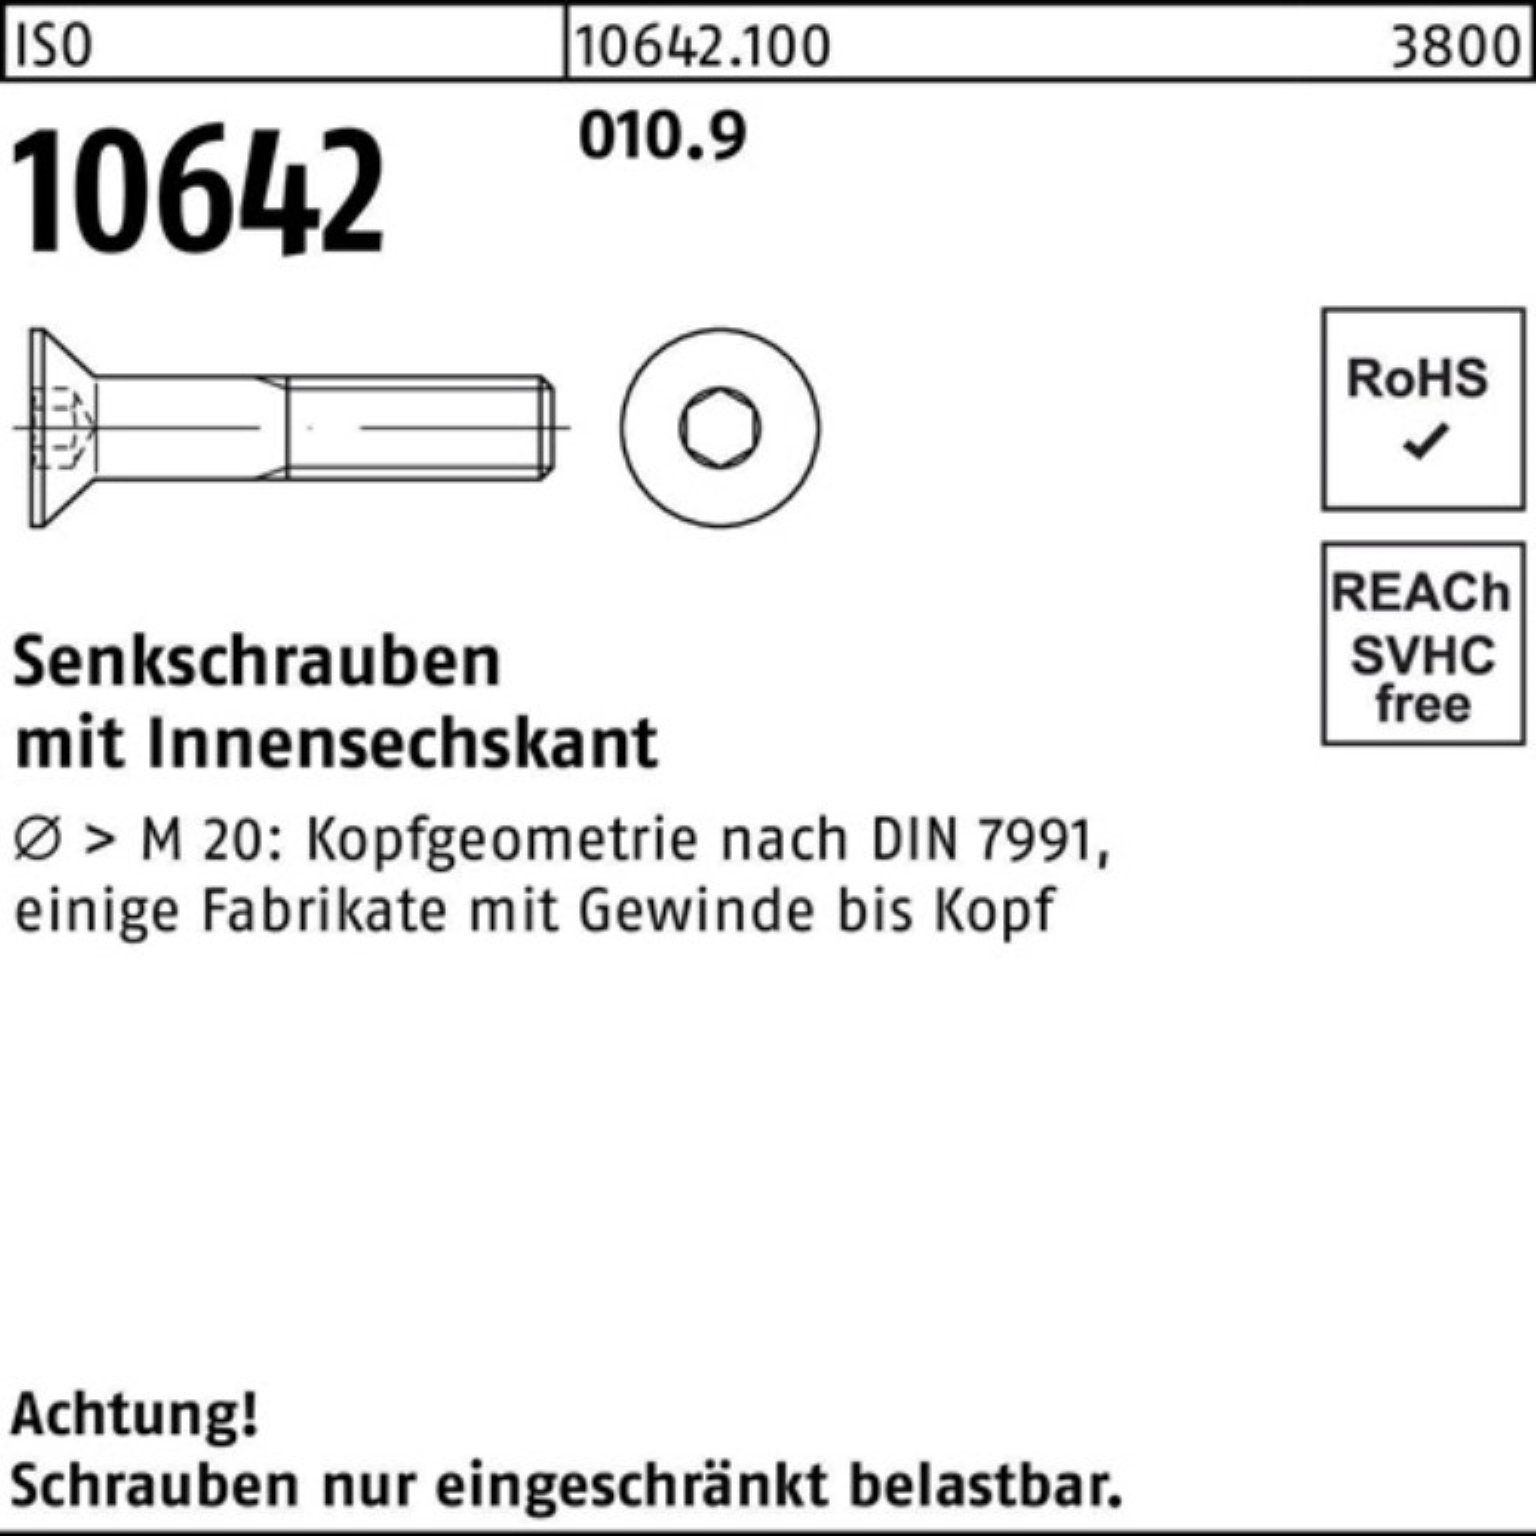 Reyher Innen-6kt Senkschraube Pack Senkschraube 010.9 Stück IS 45 M8x 200 200er 10642 ISO